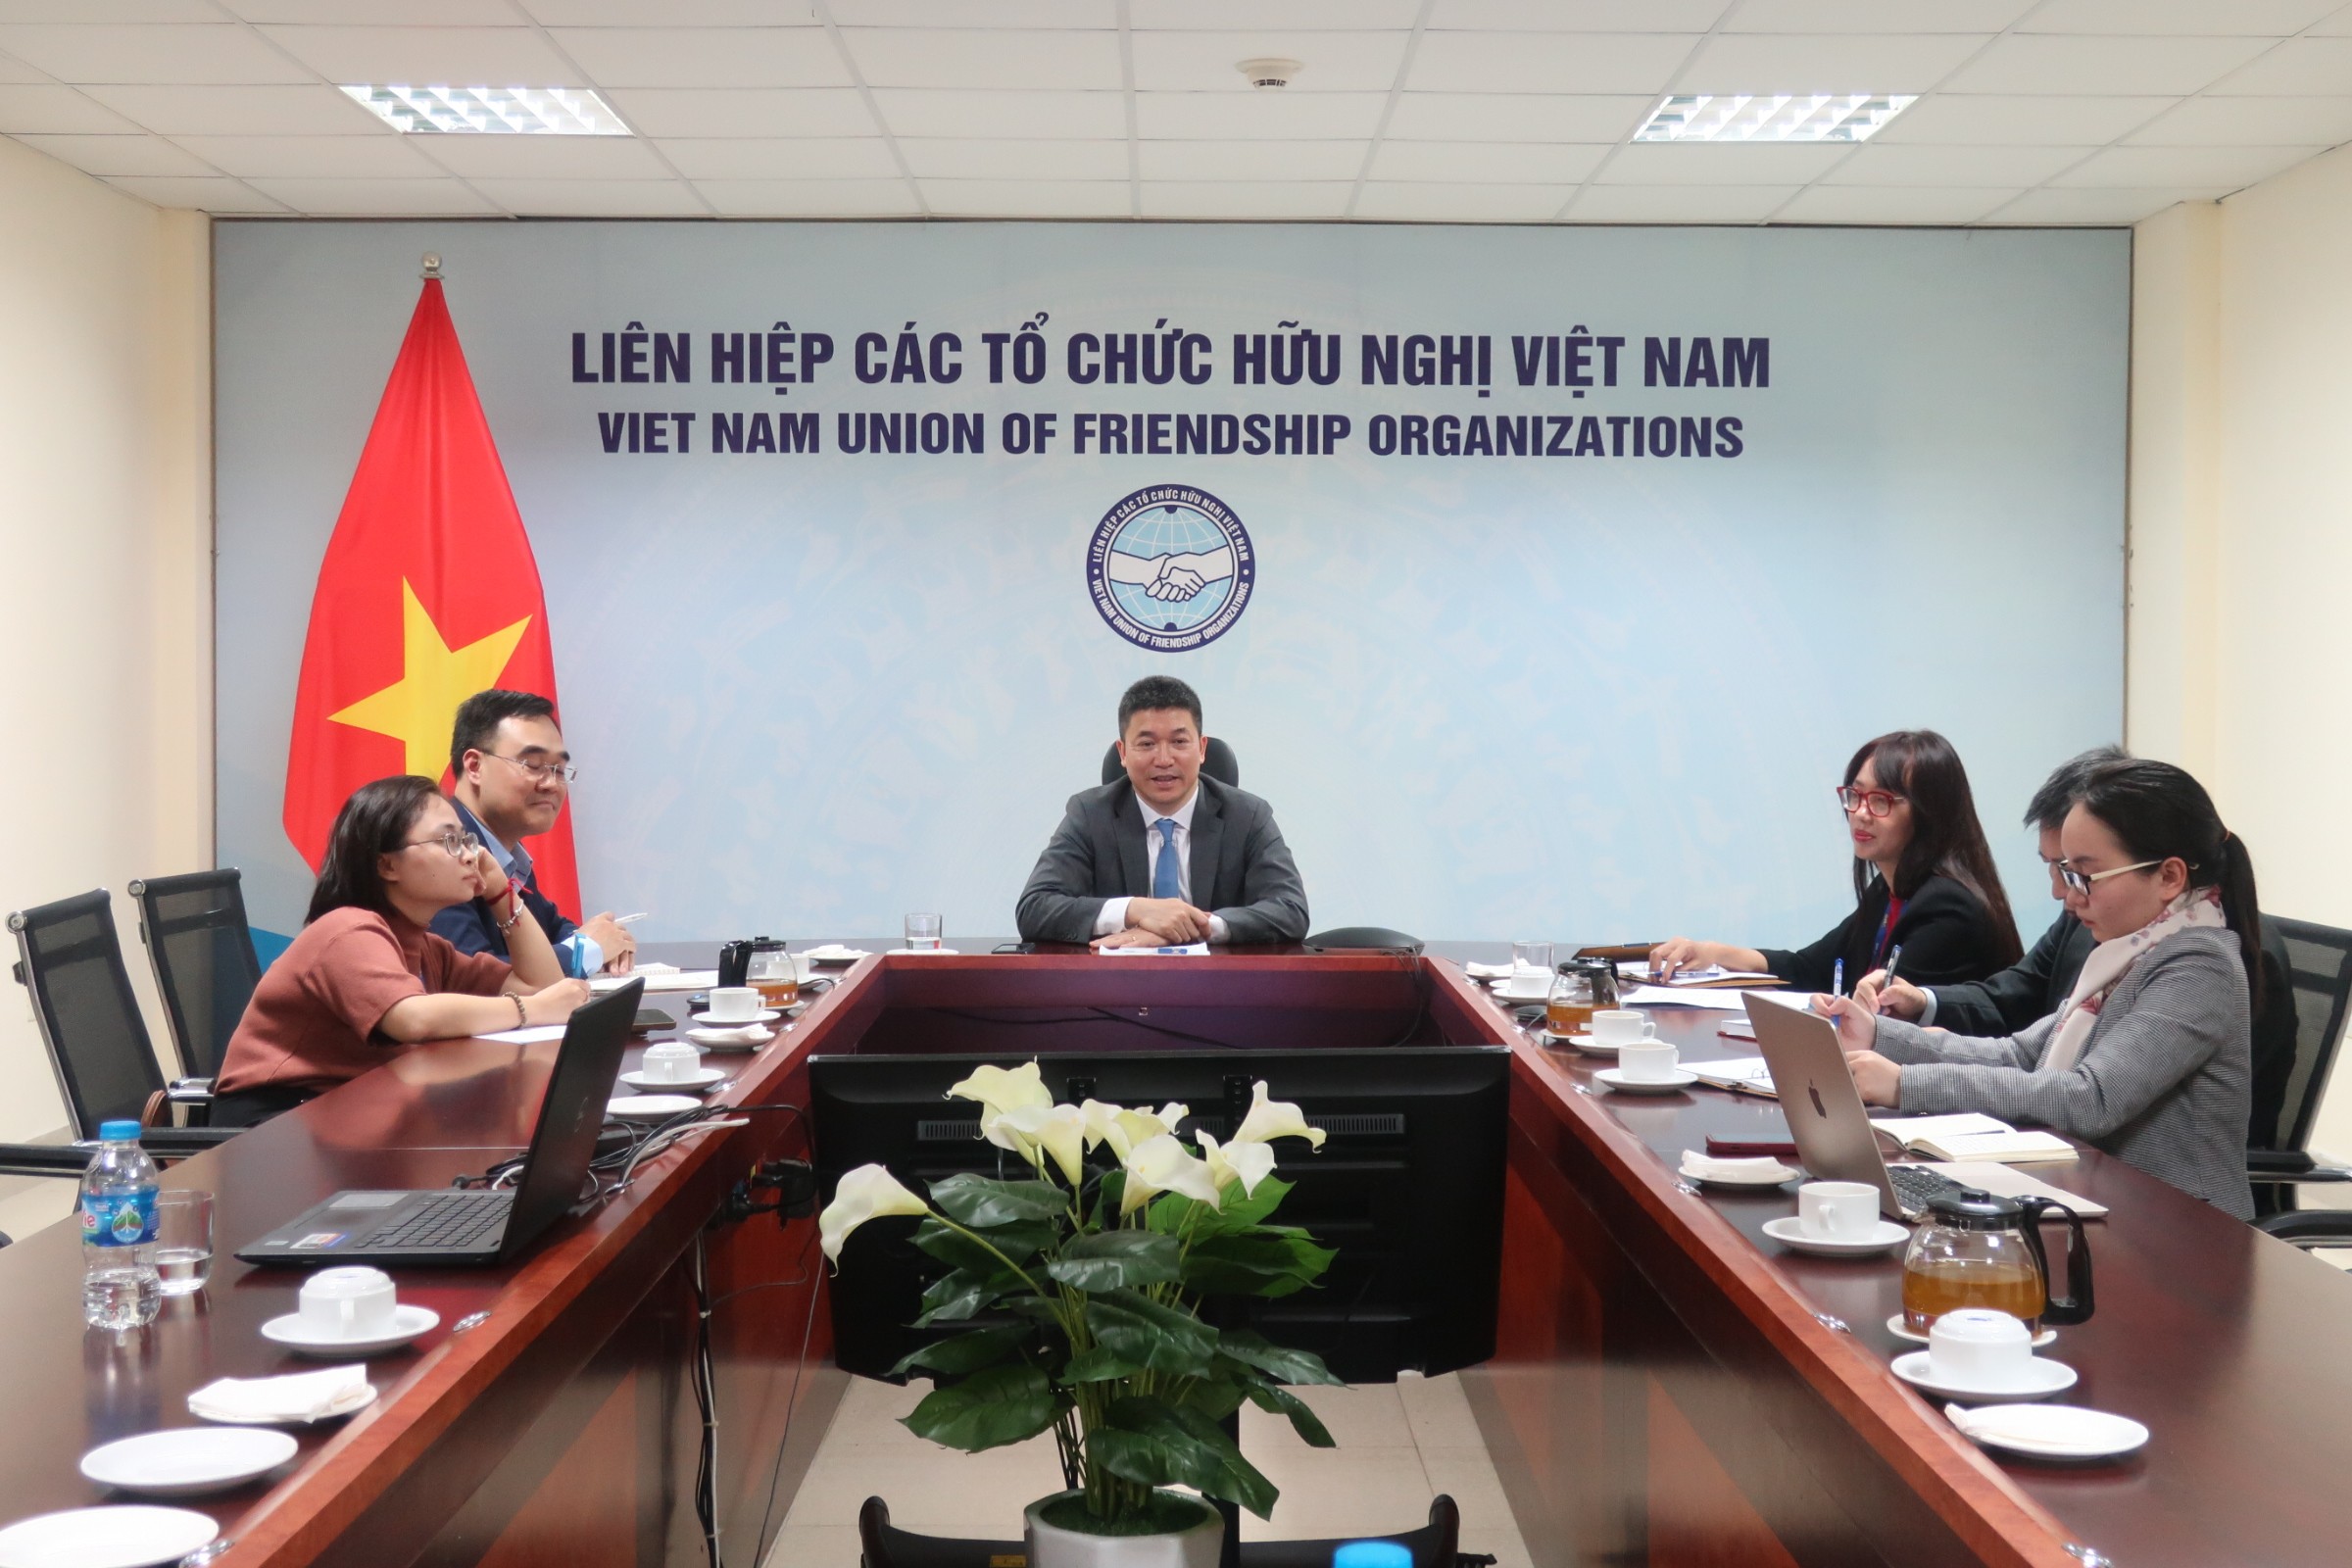 Liên hiệp các tổ chức hữu nghị Việt Nam tổ chức hội đàm trực tuyến với Hiệp hội Hữu nghị và Giao lưu Văn hóa với nước ngoài của Belarus, ngày 22/3.